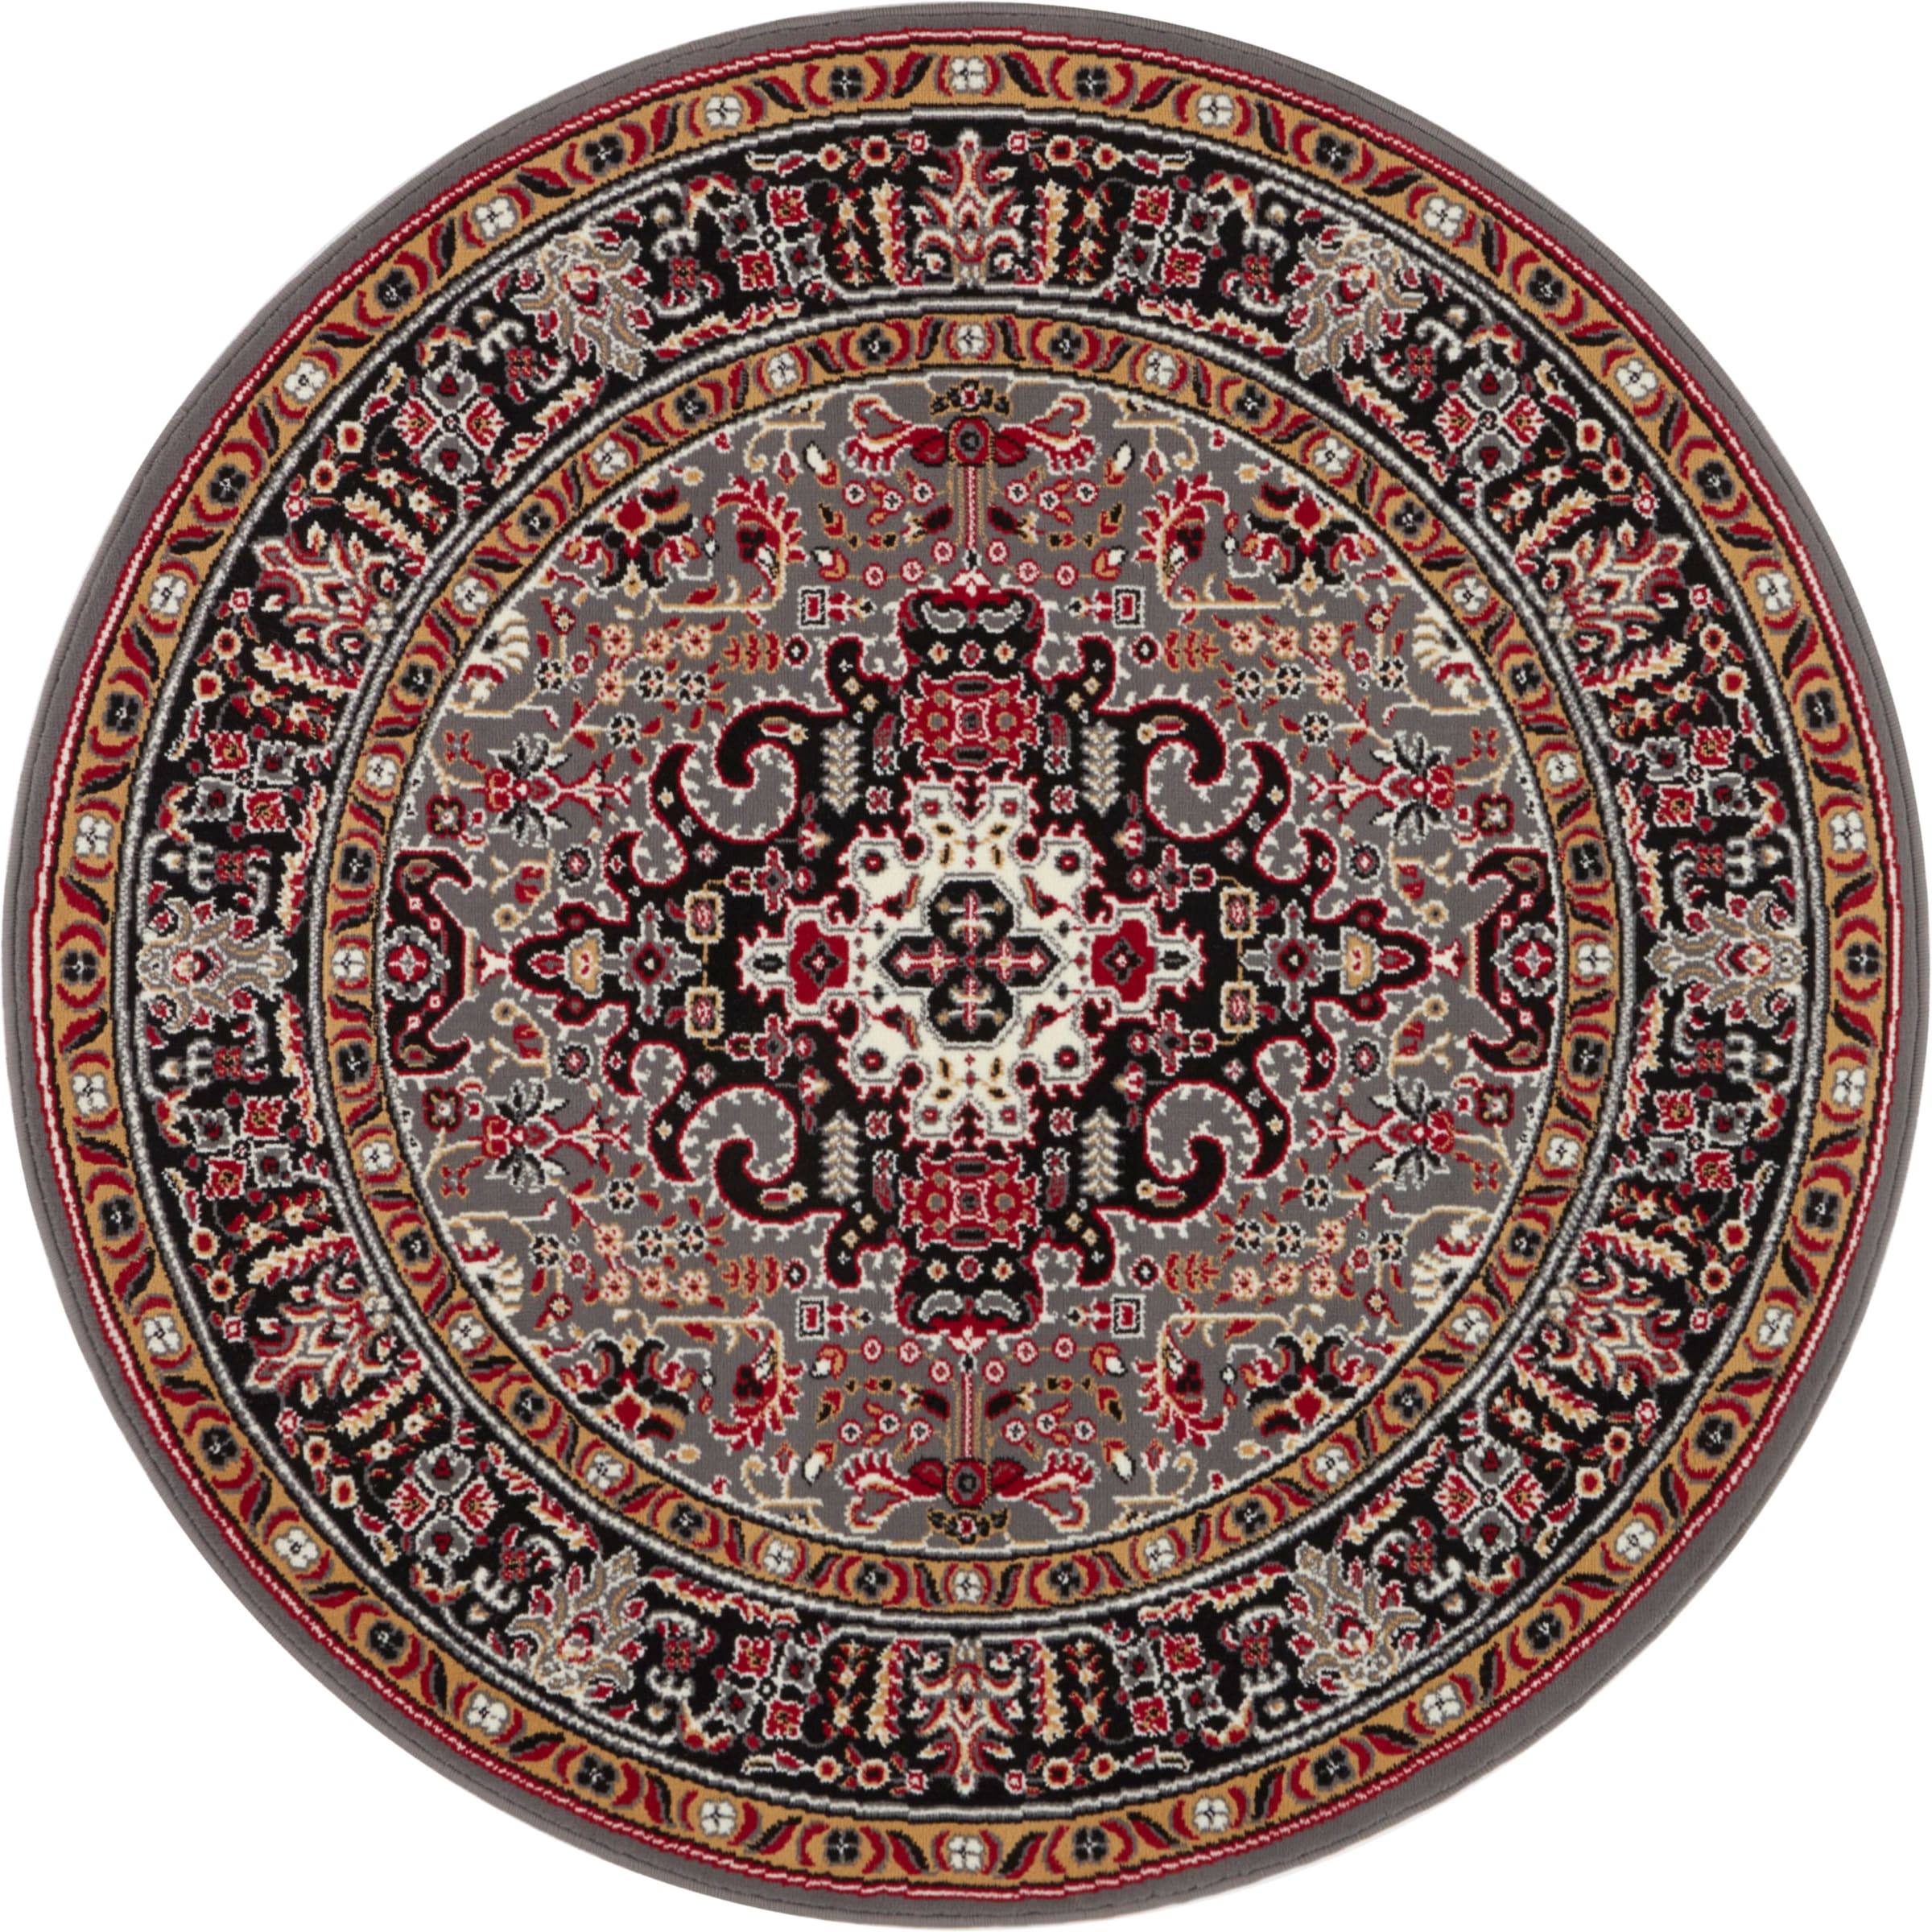 NOURISTAN Teppich "Skazar Isfahan", rund, Kurzflor, Orient, Teppich, Vintage, Esszimmer, Wohnzimmer, Flur